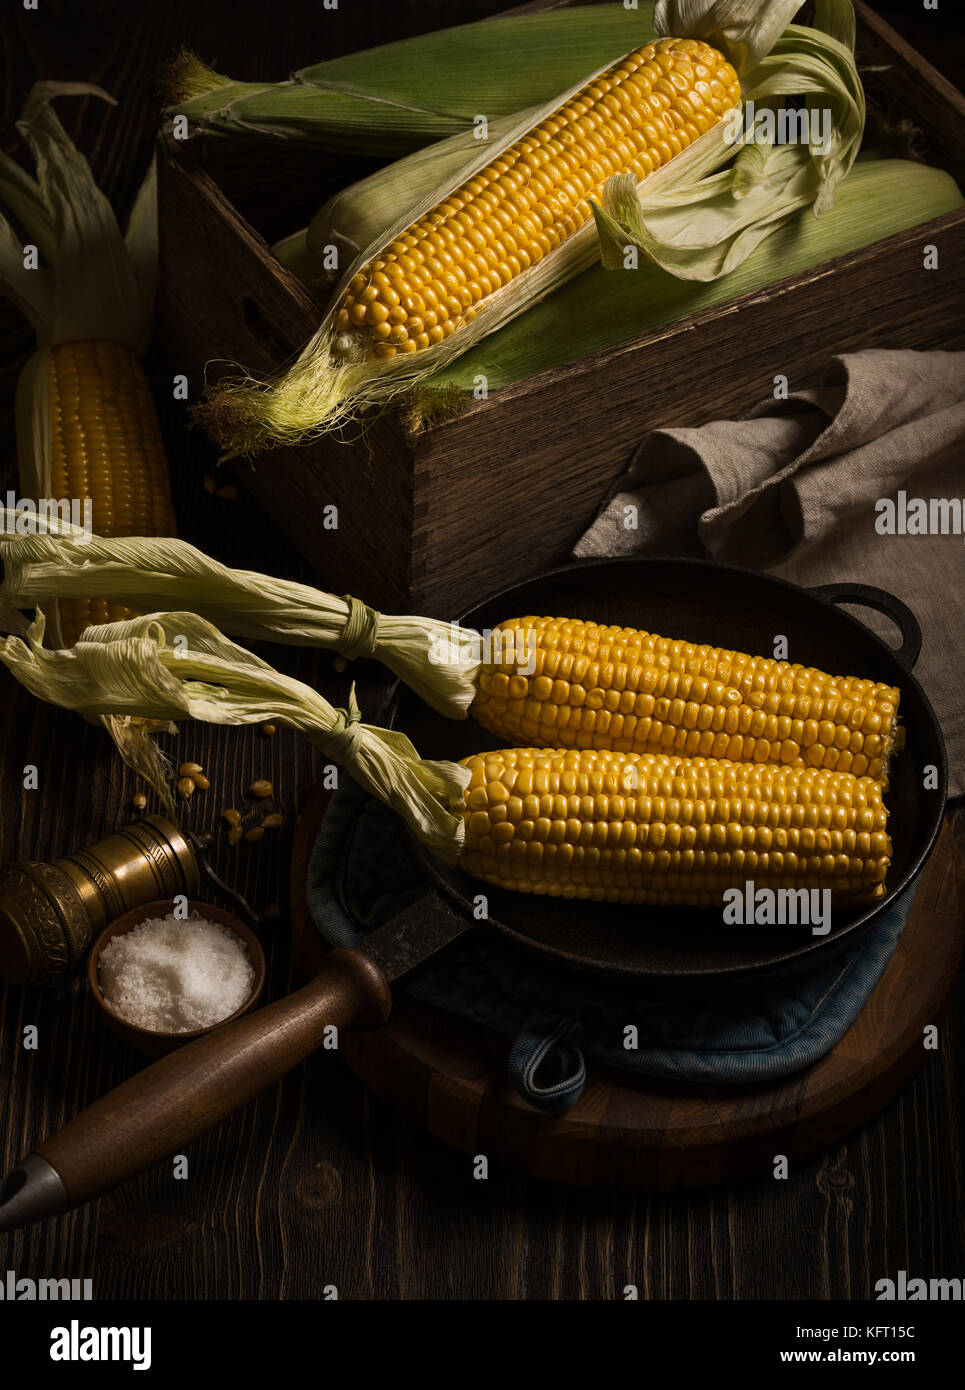 Maiskolben in der Bratpfanne Stockfoto